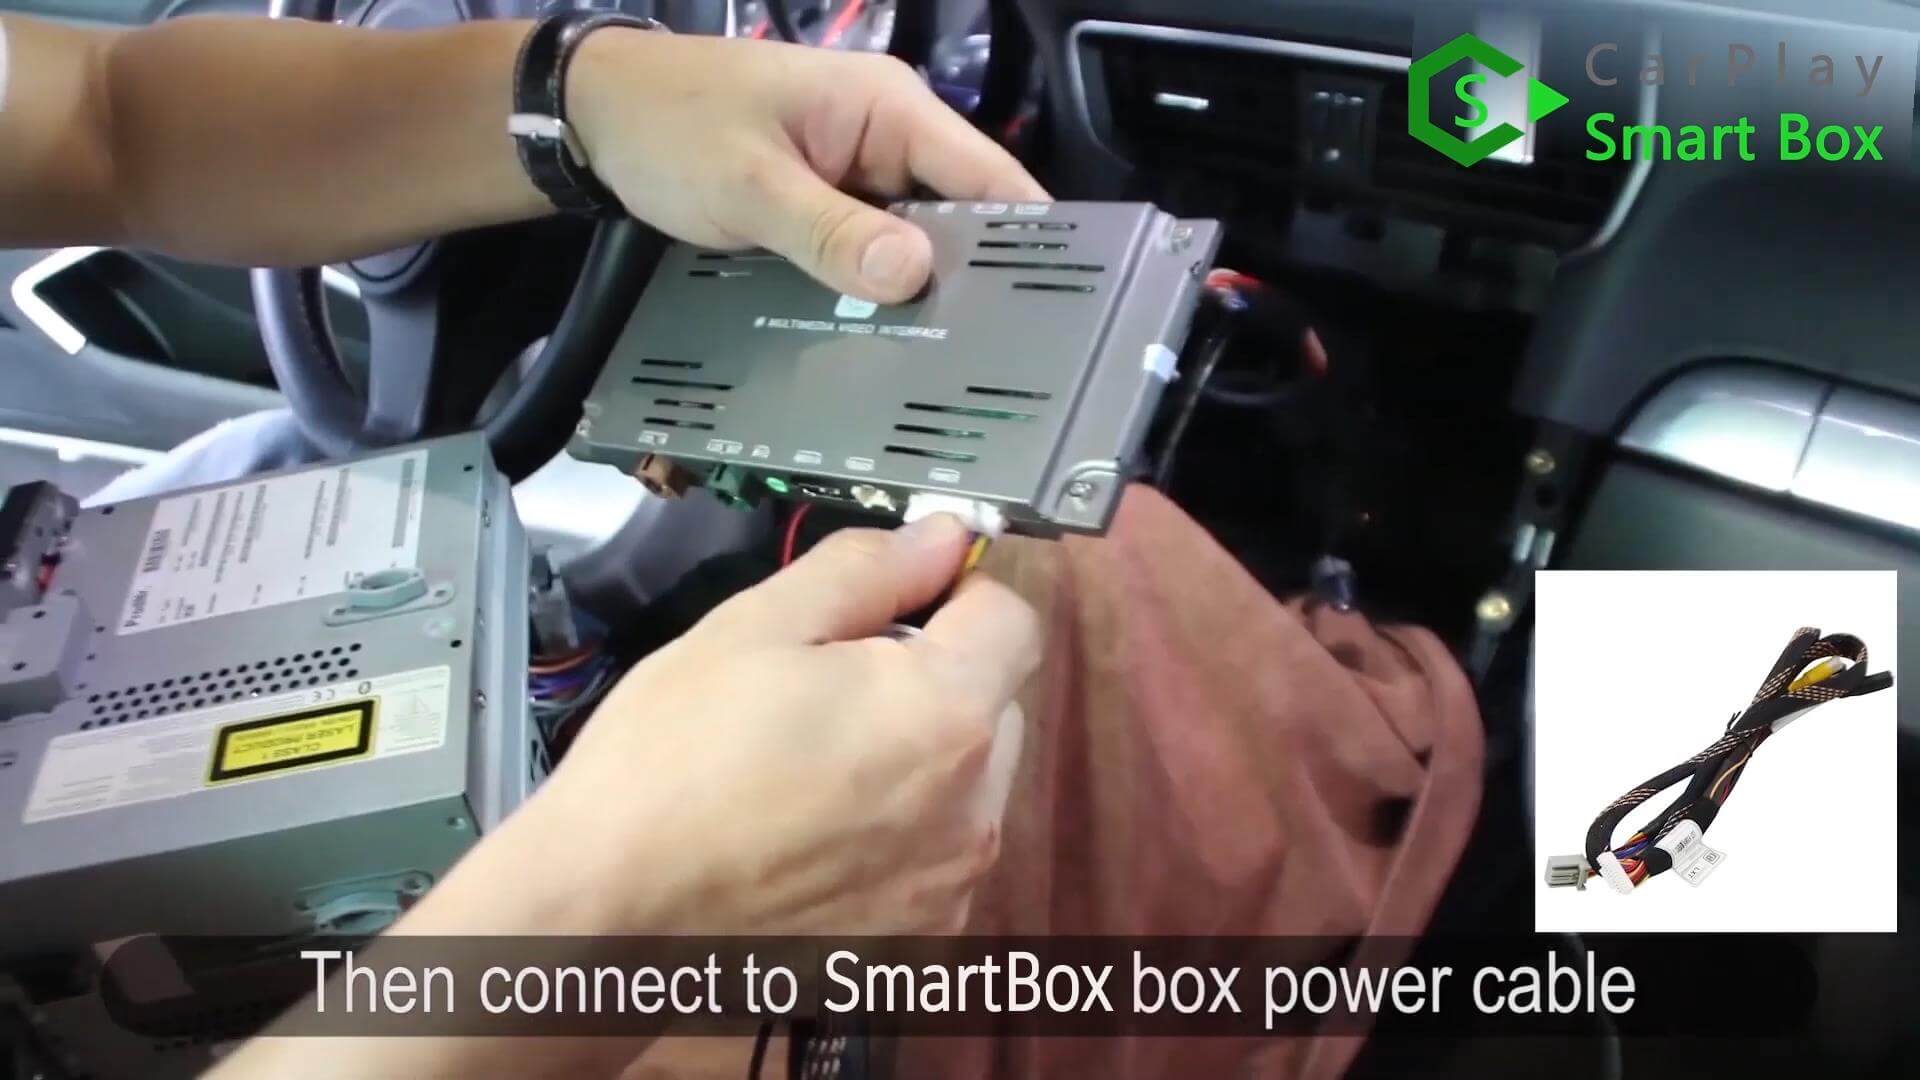 11. Στη συνέχεια συνδέστε το καλώδιο τροφοδοσίας στο Smart Box box - Wireless Apple CarPlay Smart Box for Porsche 911 PCM3.1 Head unit - CarPlay Smart Box